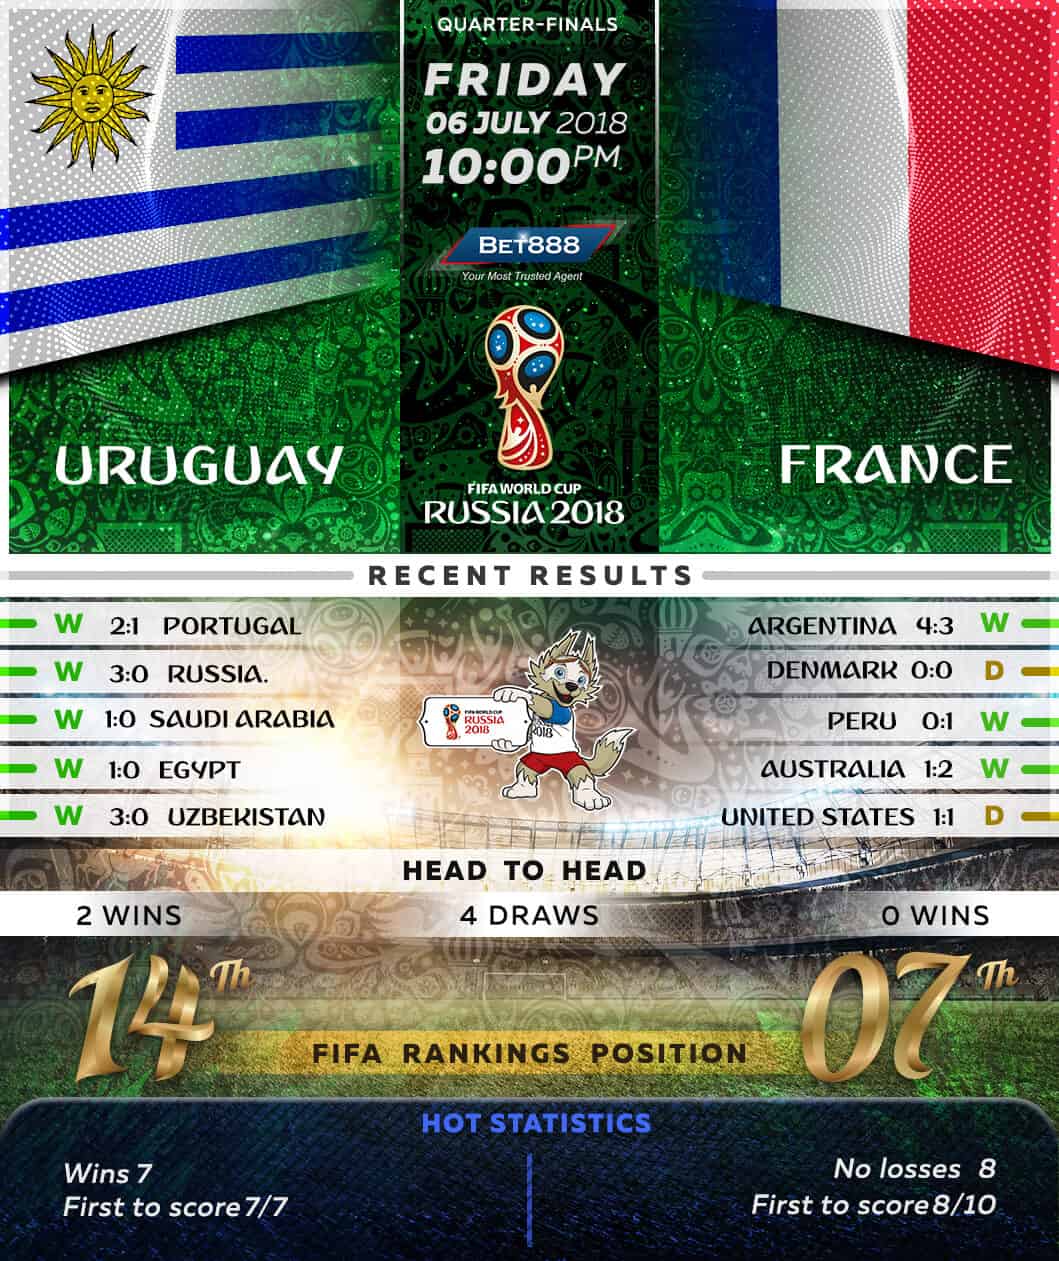 Uruguay vs France 06/07/18